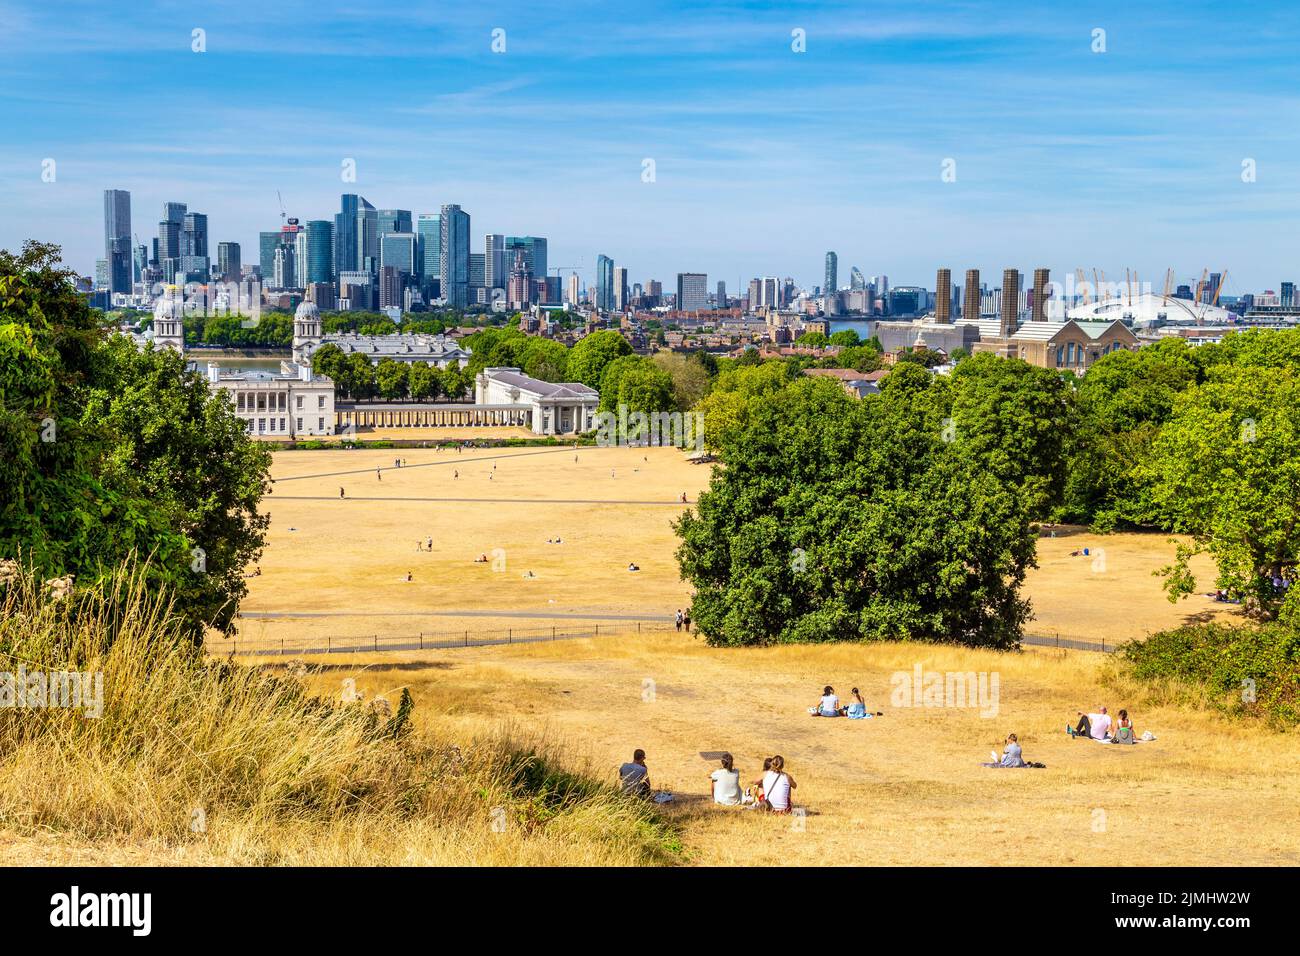 6 août 2022 - Londres, Royaume-Uni - a séché les prairies à Greenwich Park après une série de vagues de chaleur et des températures records, ville confrontée à la sécheresse et mesures de rationnement de l'eau Banque D'Images